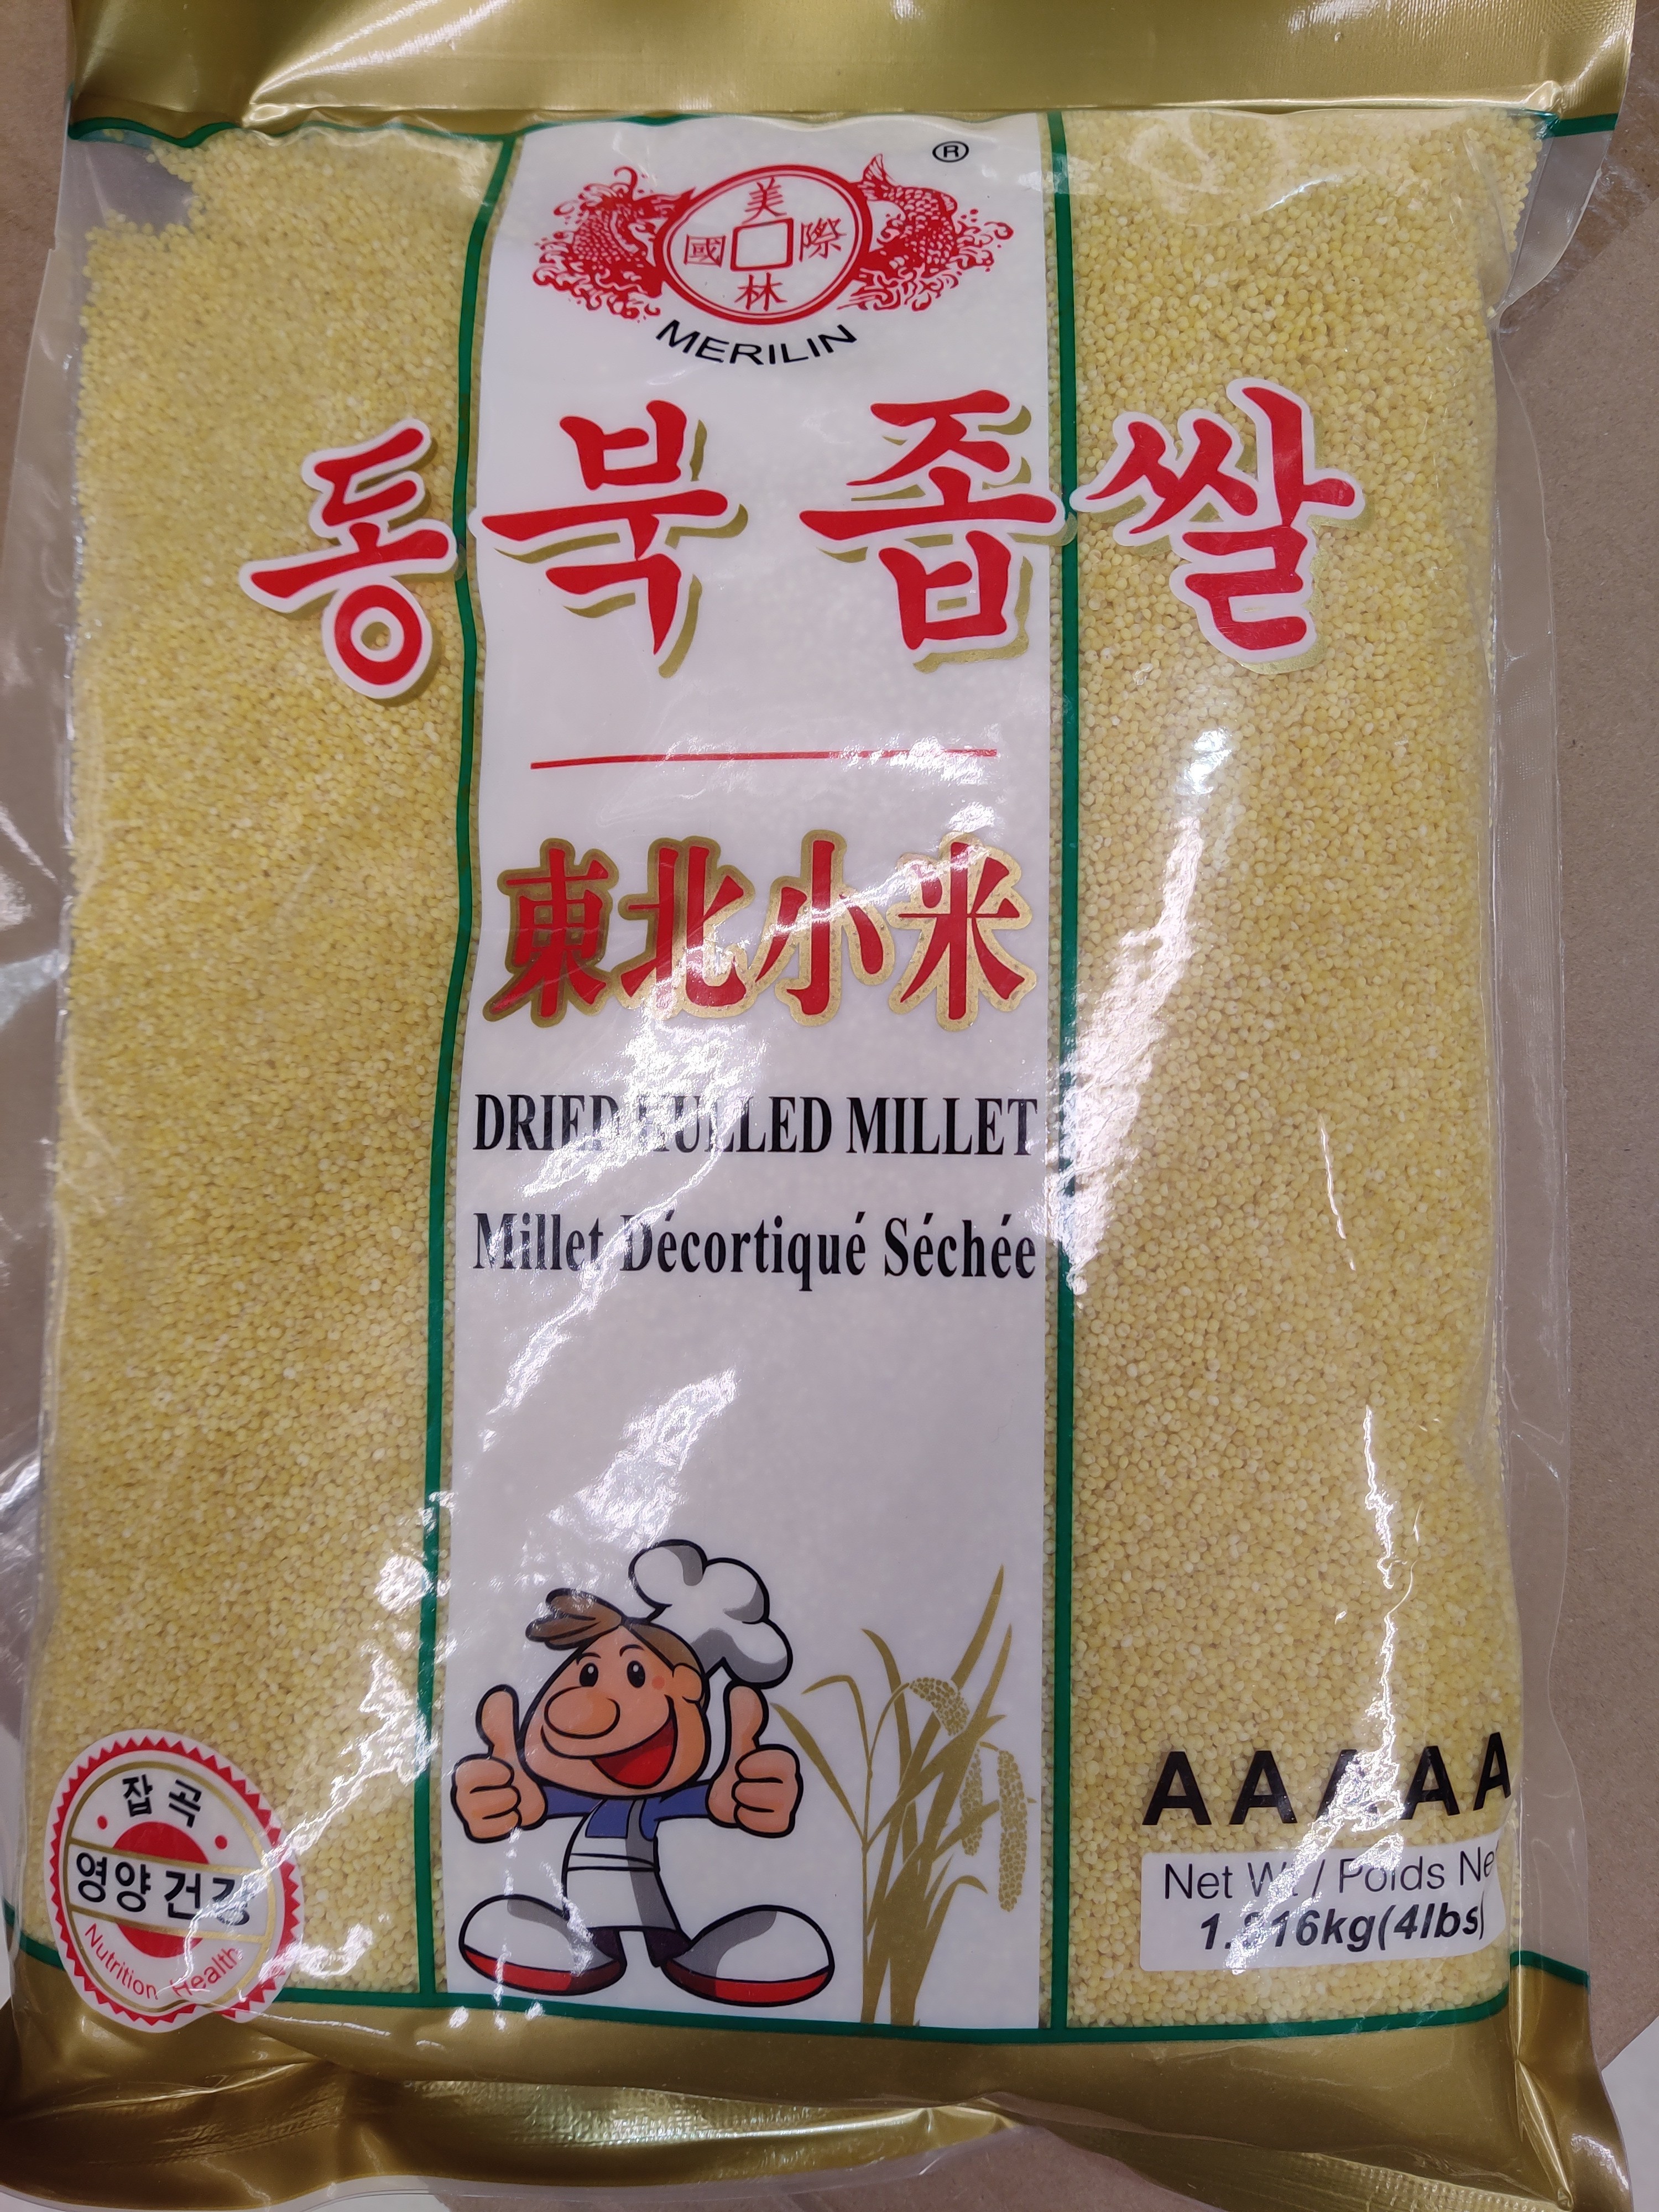 merlin-dried-hulled-millet